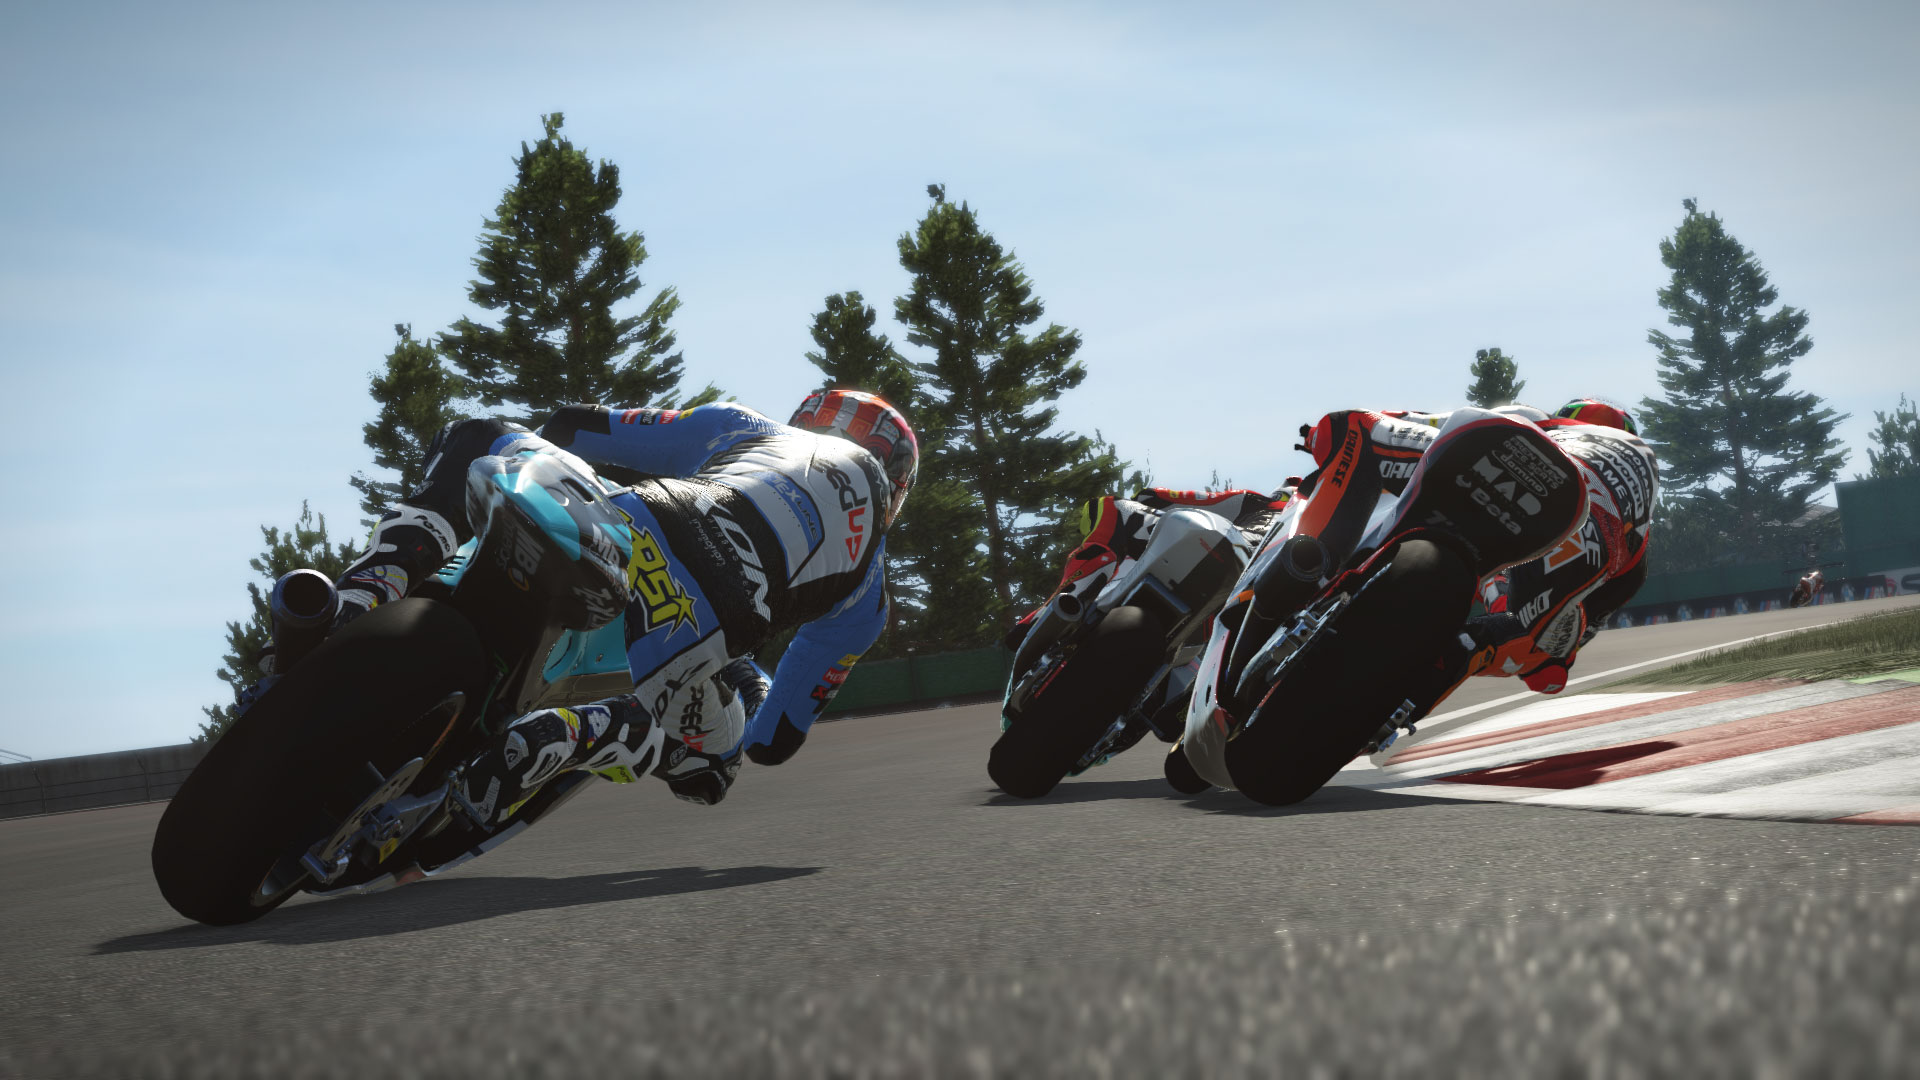 MotoGP 17 Free Full Game Download - Free PC Games Den